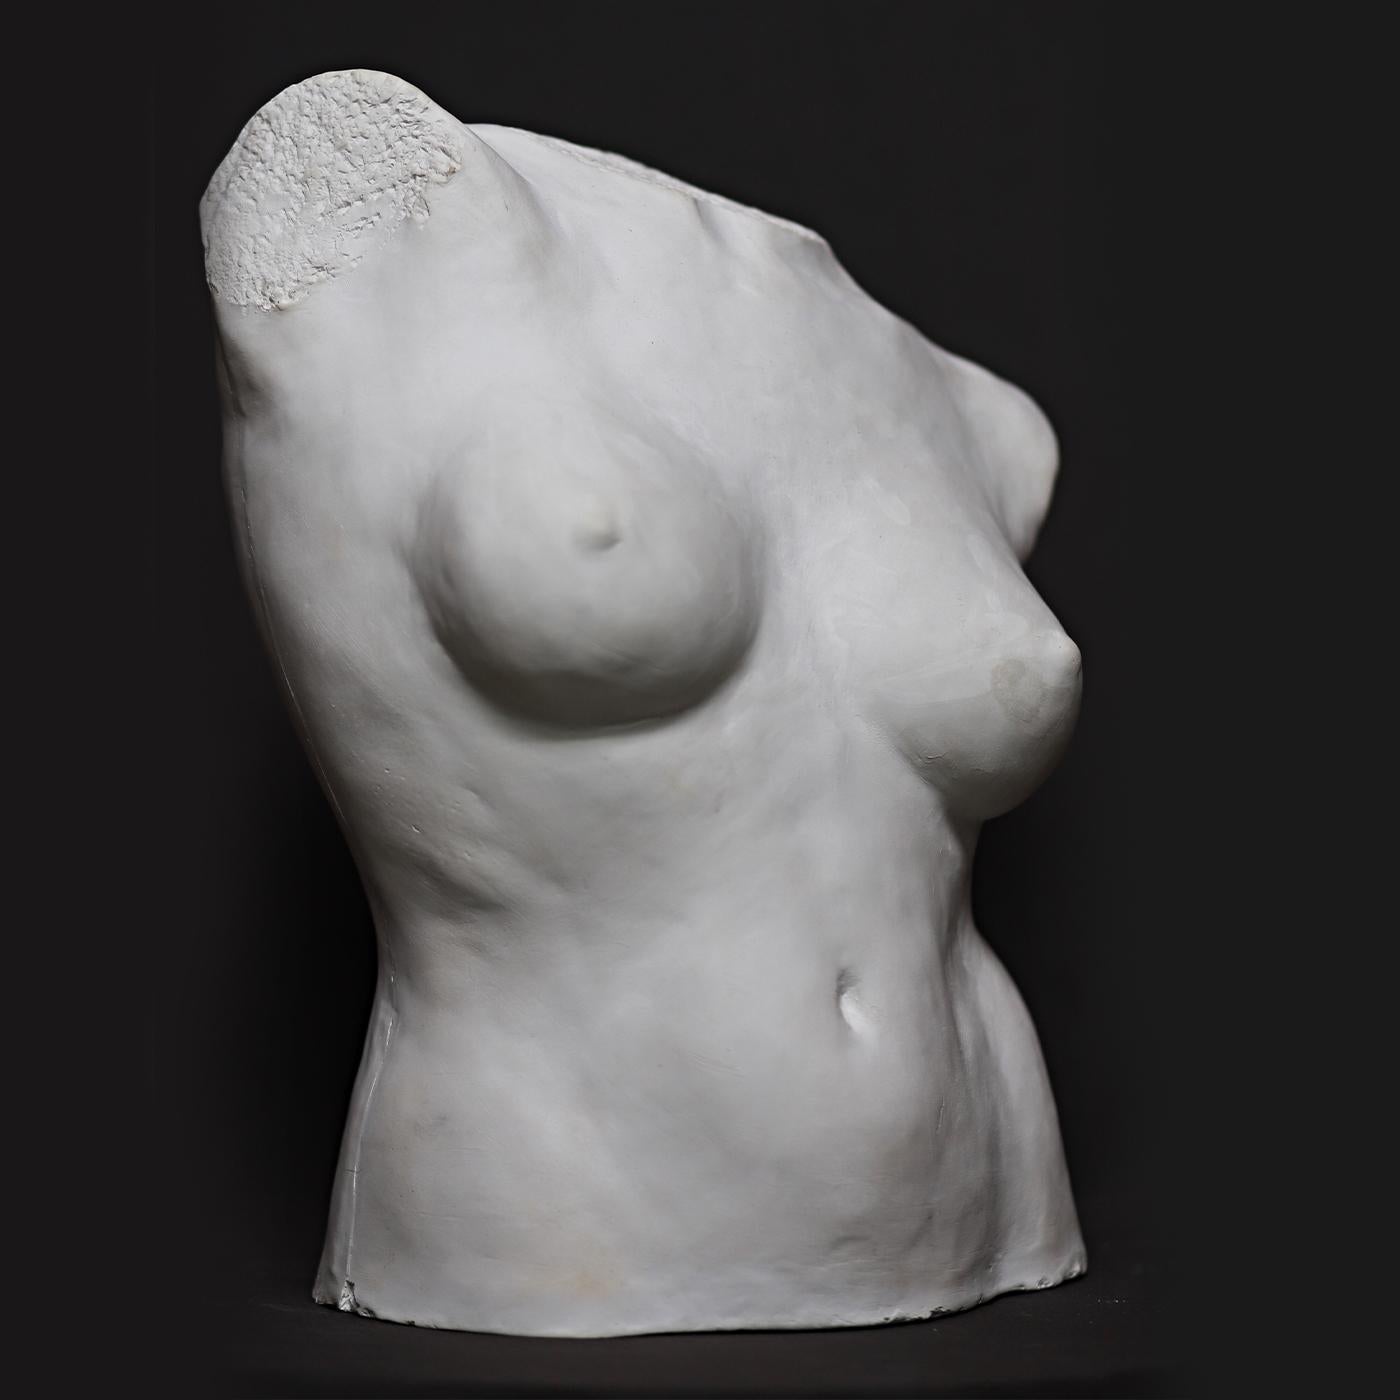 Cette glorieuse œuvre d'art du sculpteur Raffaello Romanelli est une sculpture originale et singulière réalisée à la main en gypse. Elle représente le buste d'une femme nue, empreint d'un grand dynamisme et d'un mouvement sinueux. Une pièce de